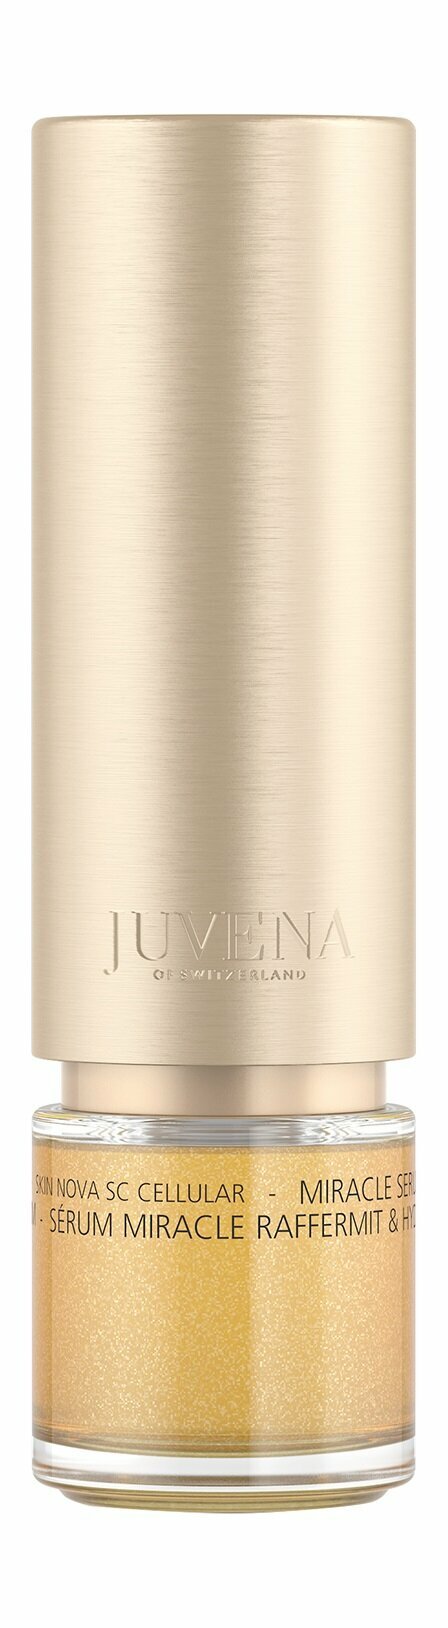 JUVENA Miracle Serum Firm & Hydrate Бьюти-сыворотка для лица подтягивающая и увлажняющая, 30 мл